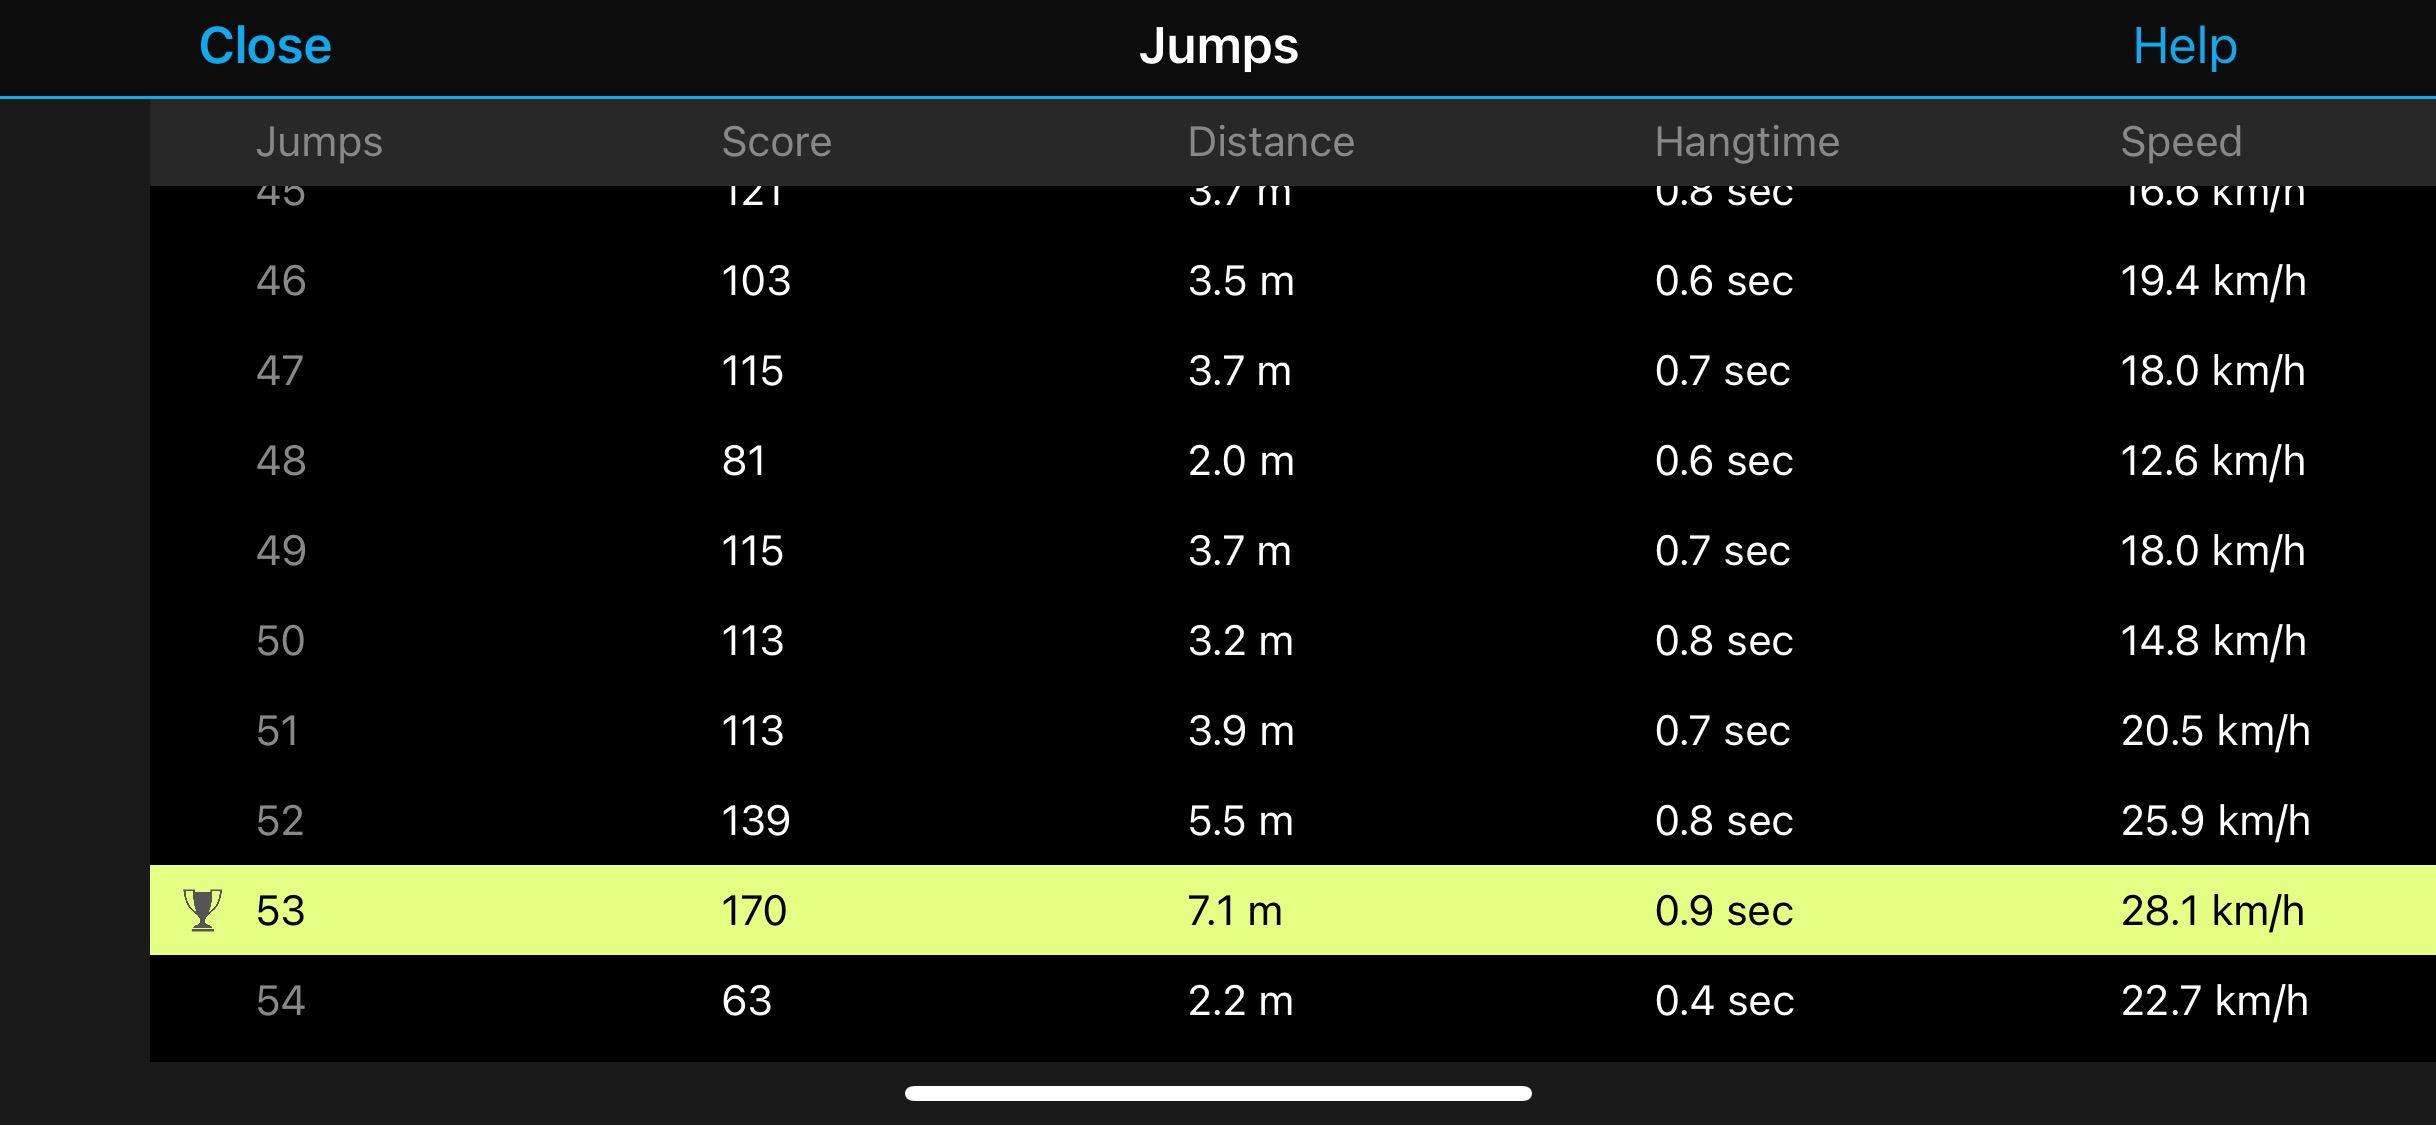 Jumps Garmin app mtb data